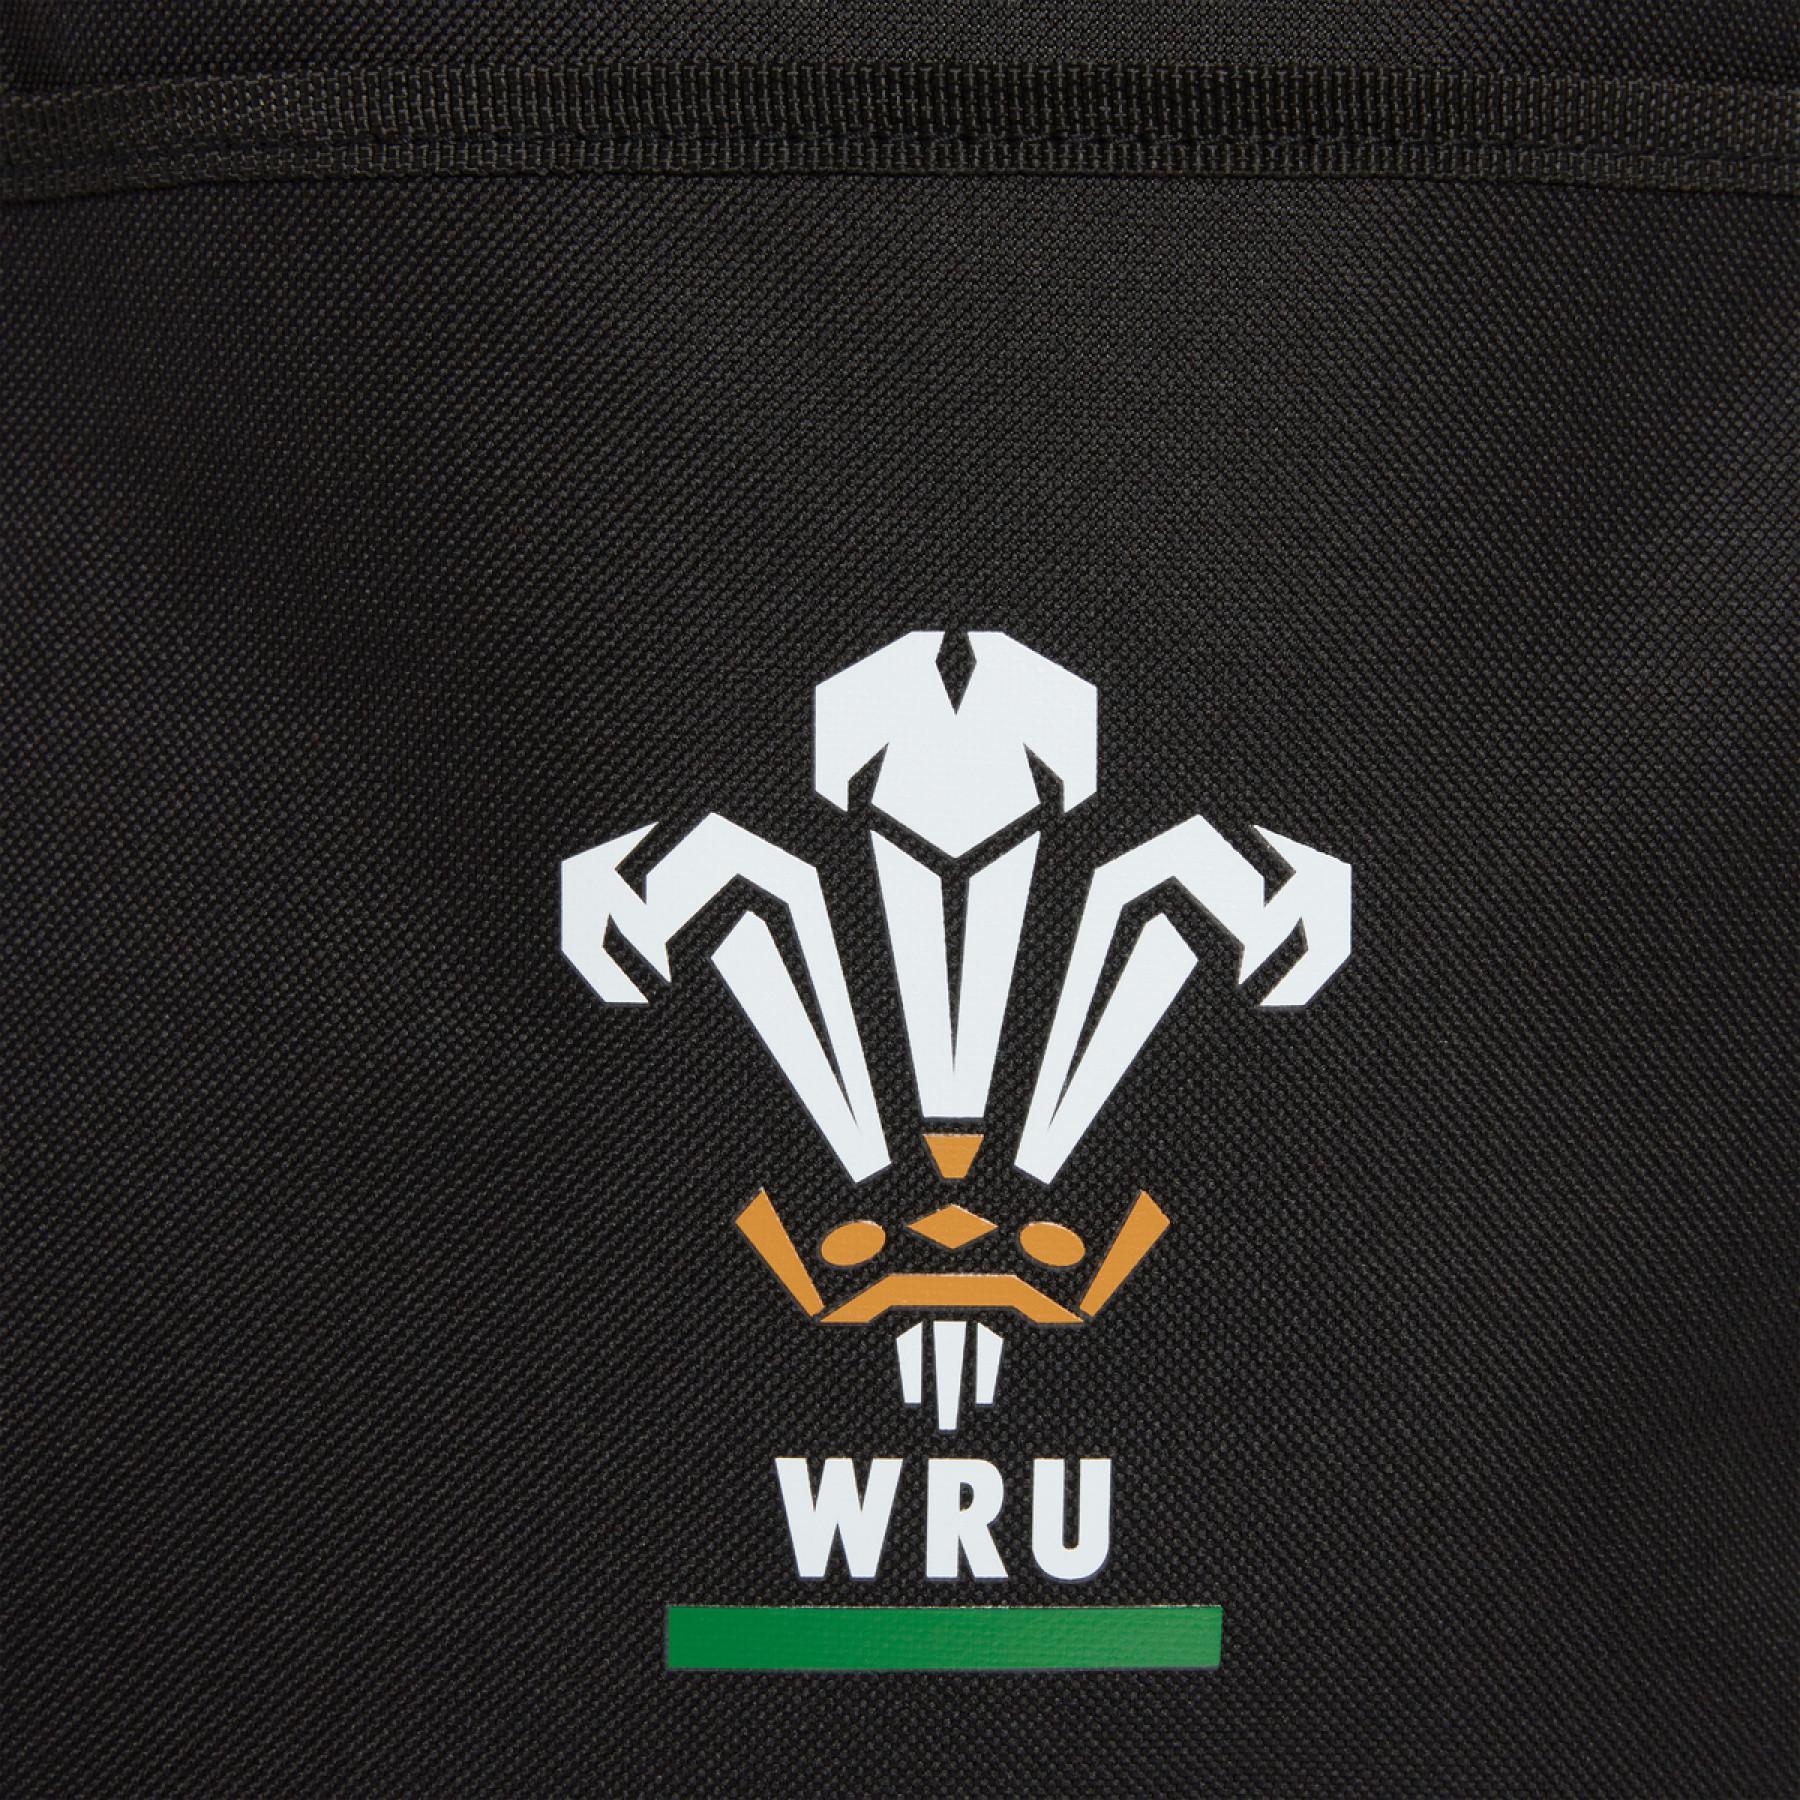 Mochila Pays de Galles rugby 2020/21